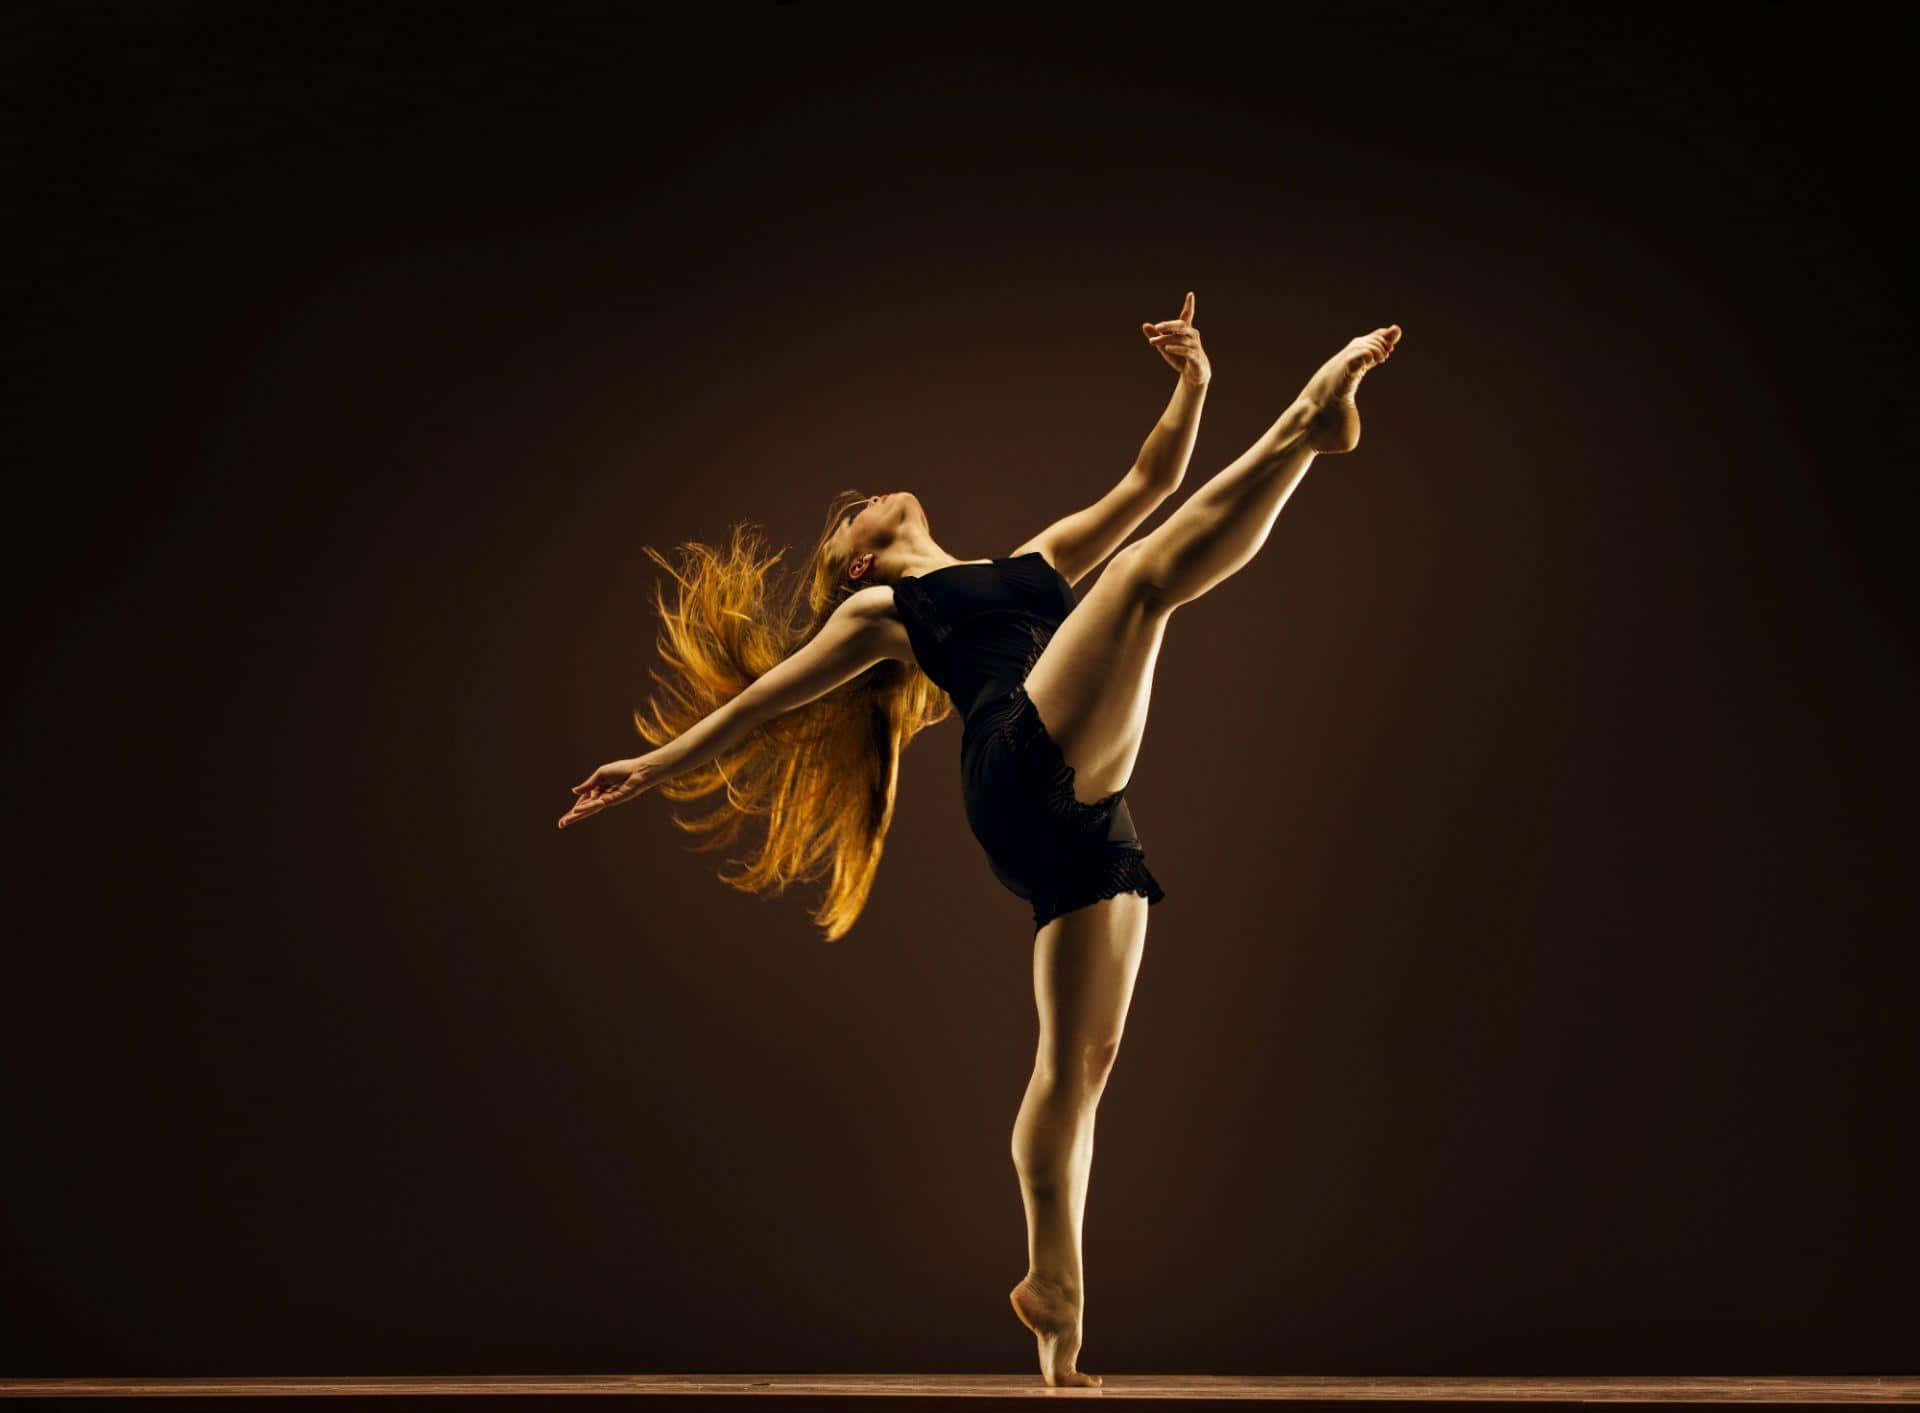 Unaelegante Bailarina En Traje Completo Se Desliza Sobre El Suelo De Un Estudio De Danza De Ballet.